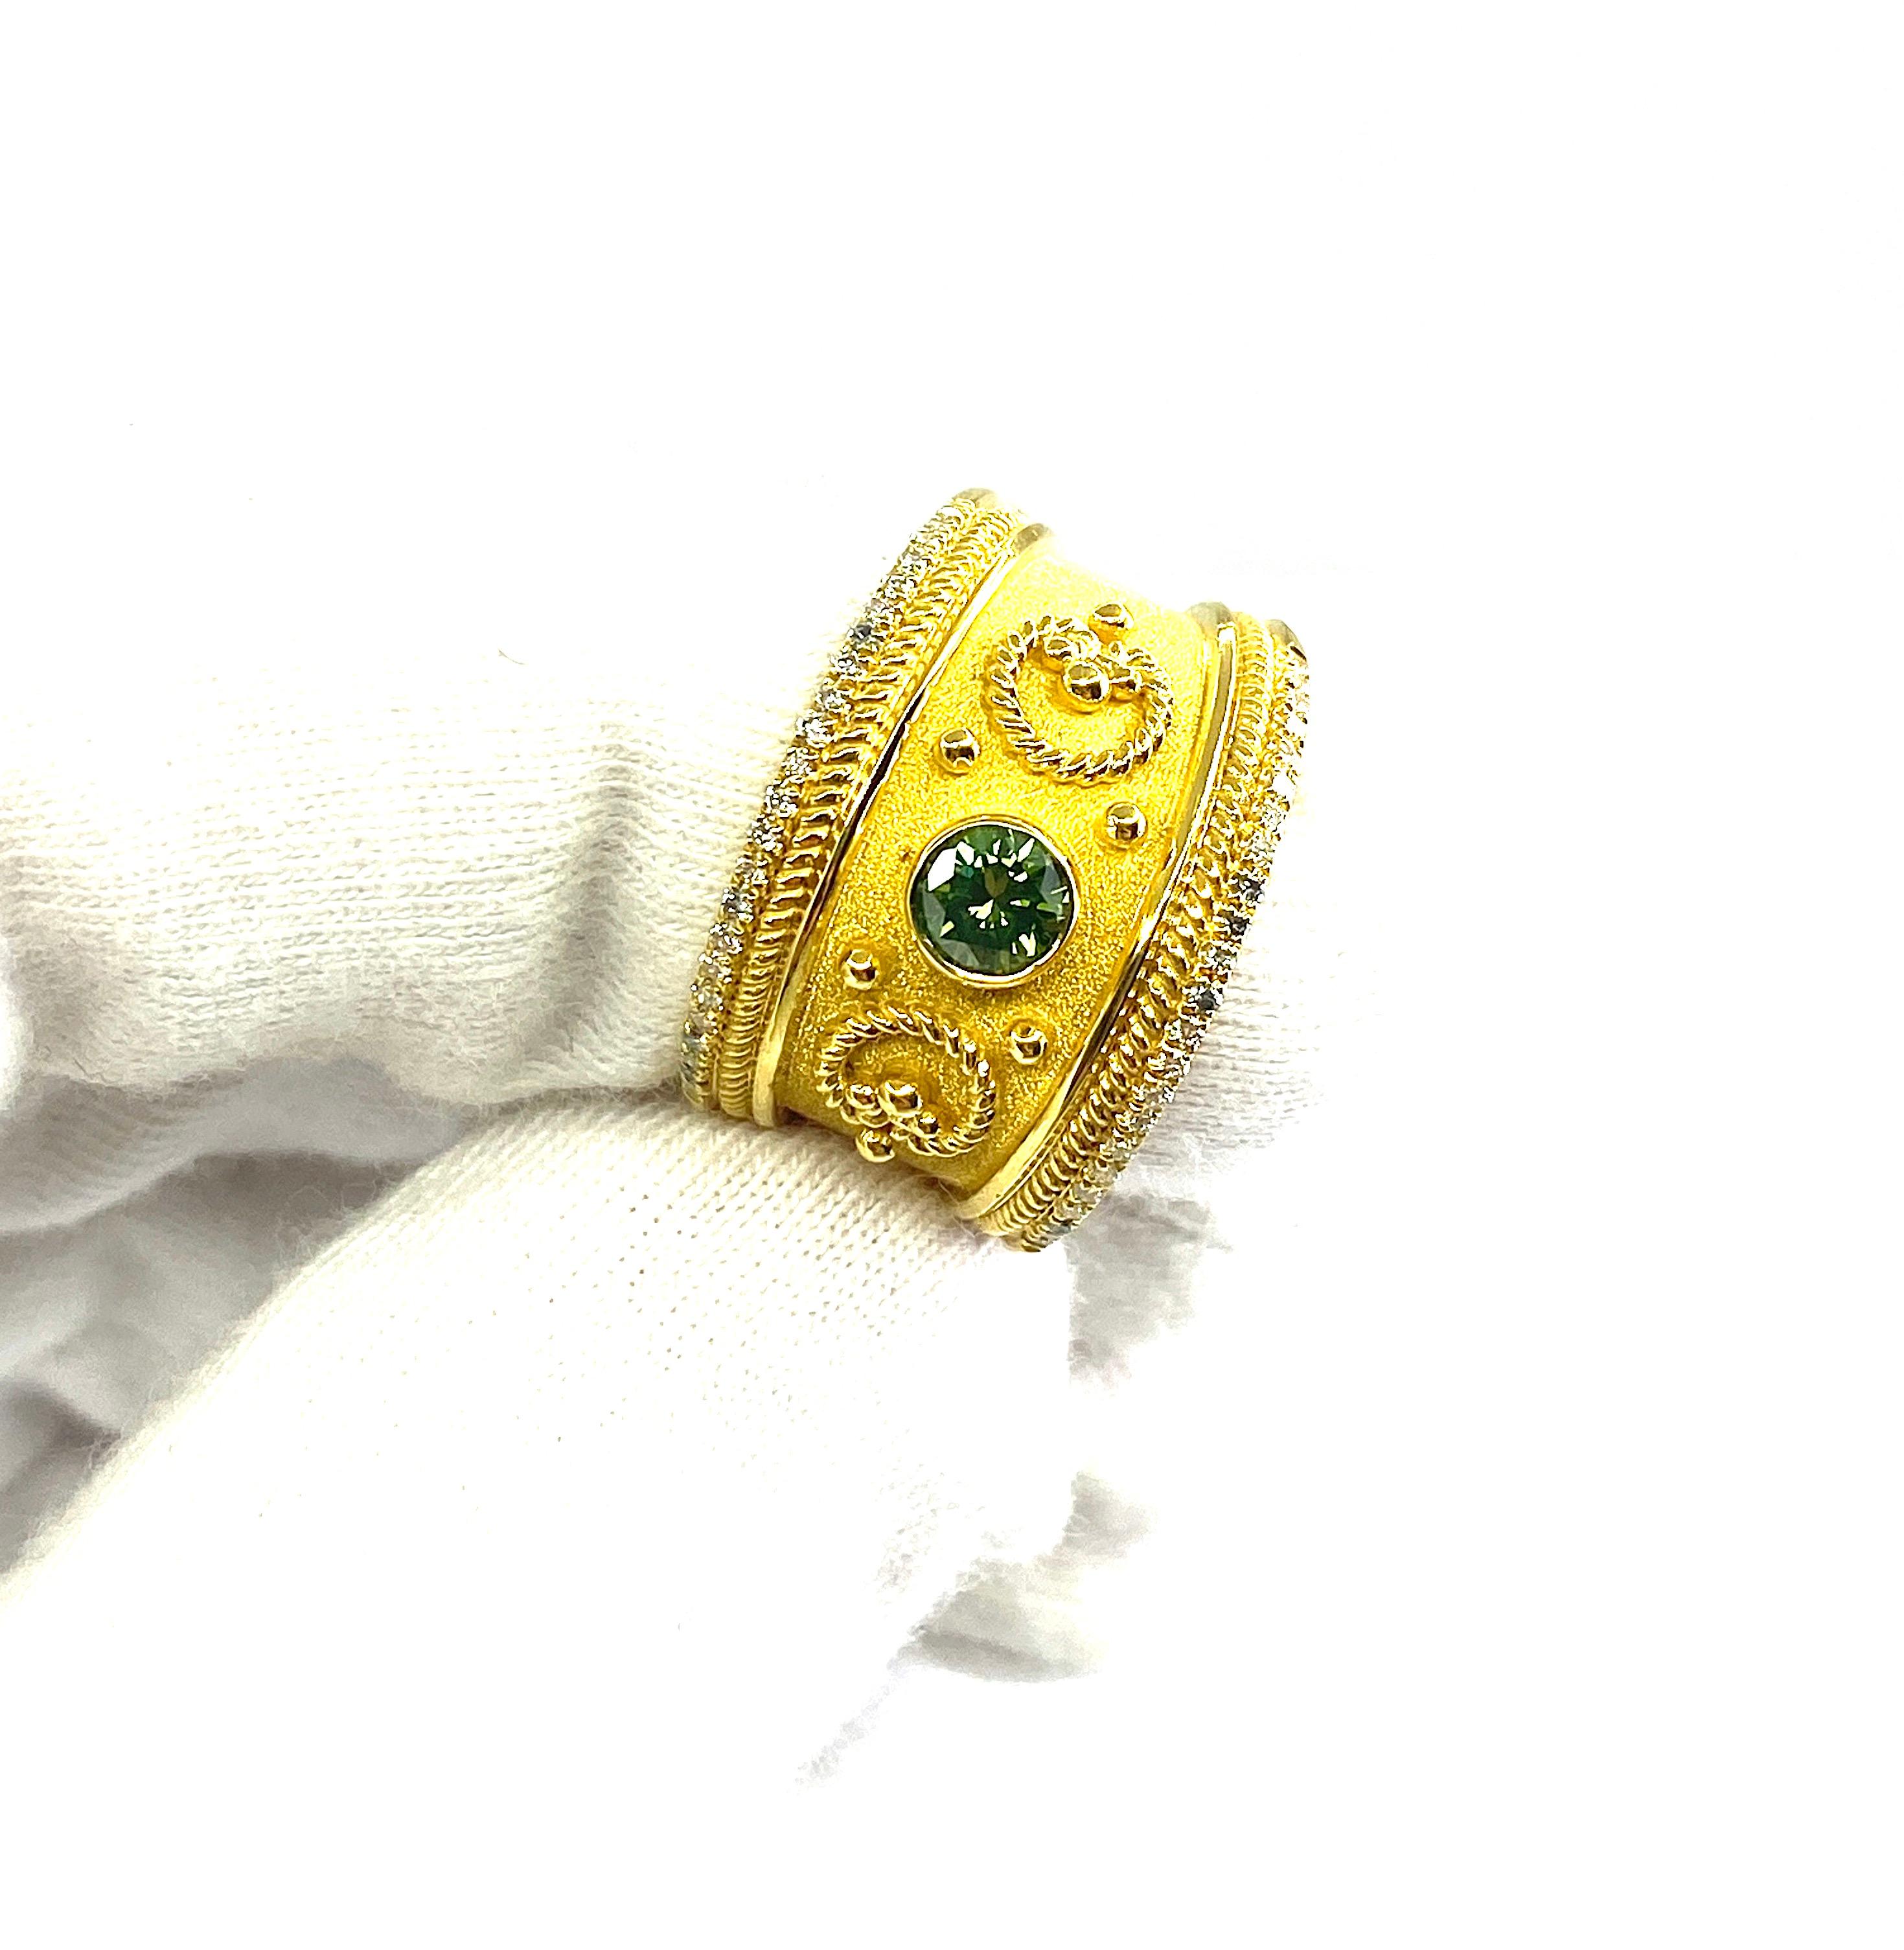 Sie bewundern den S.Georgios Designerring, handgefertigt aus massivem 18 Karat Gelbgold. Der Ring ist mikroskopisch mit Perlen aus 18 Karat Gelbgold verziert.  und verschlungenen Drähten vor dem Hintergrund von byzantinischem Samt. Der Ring verfügt